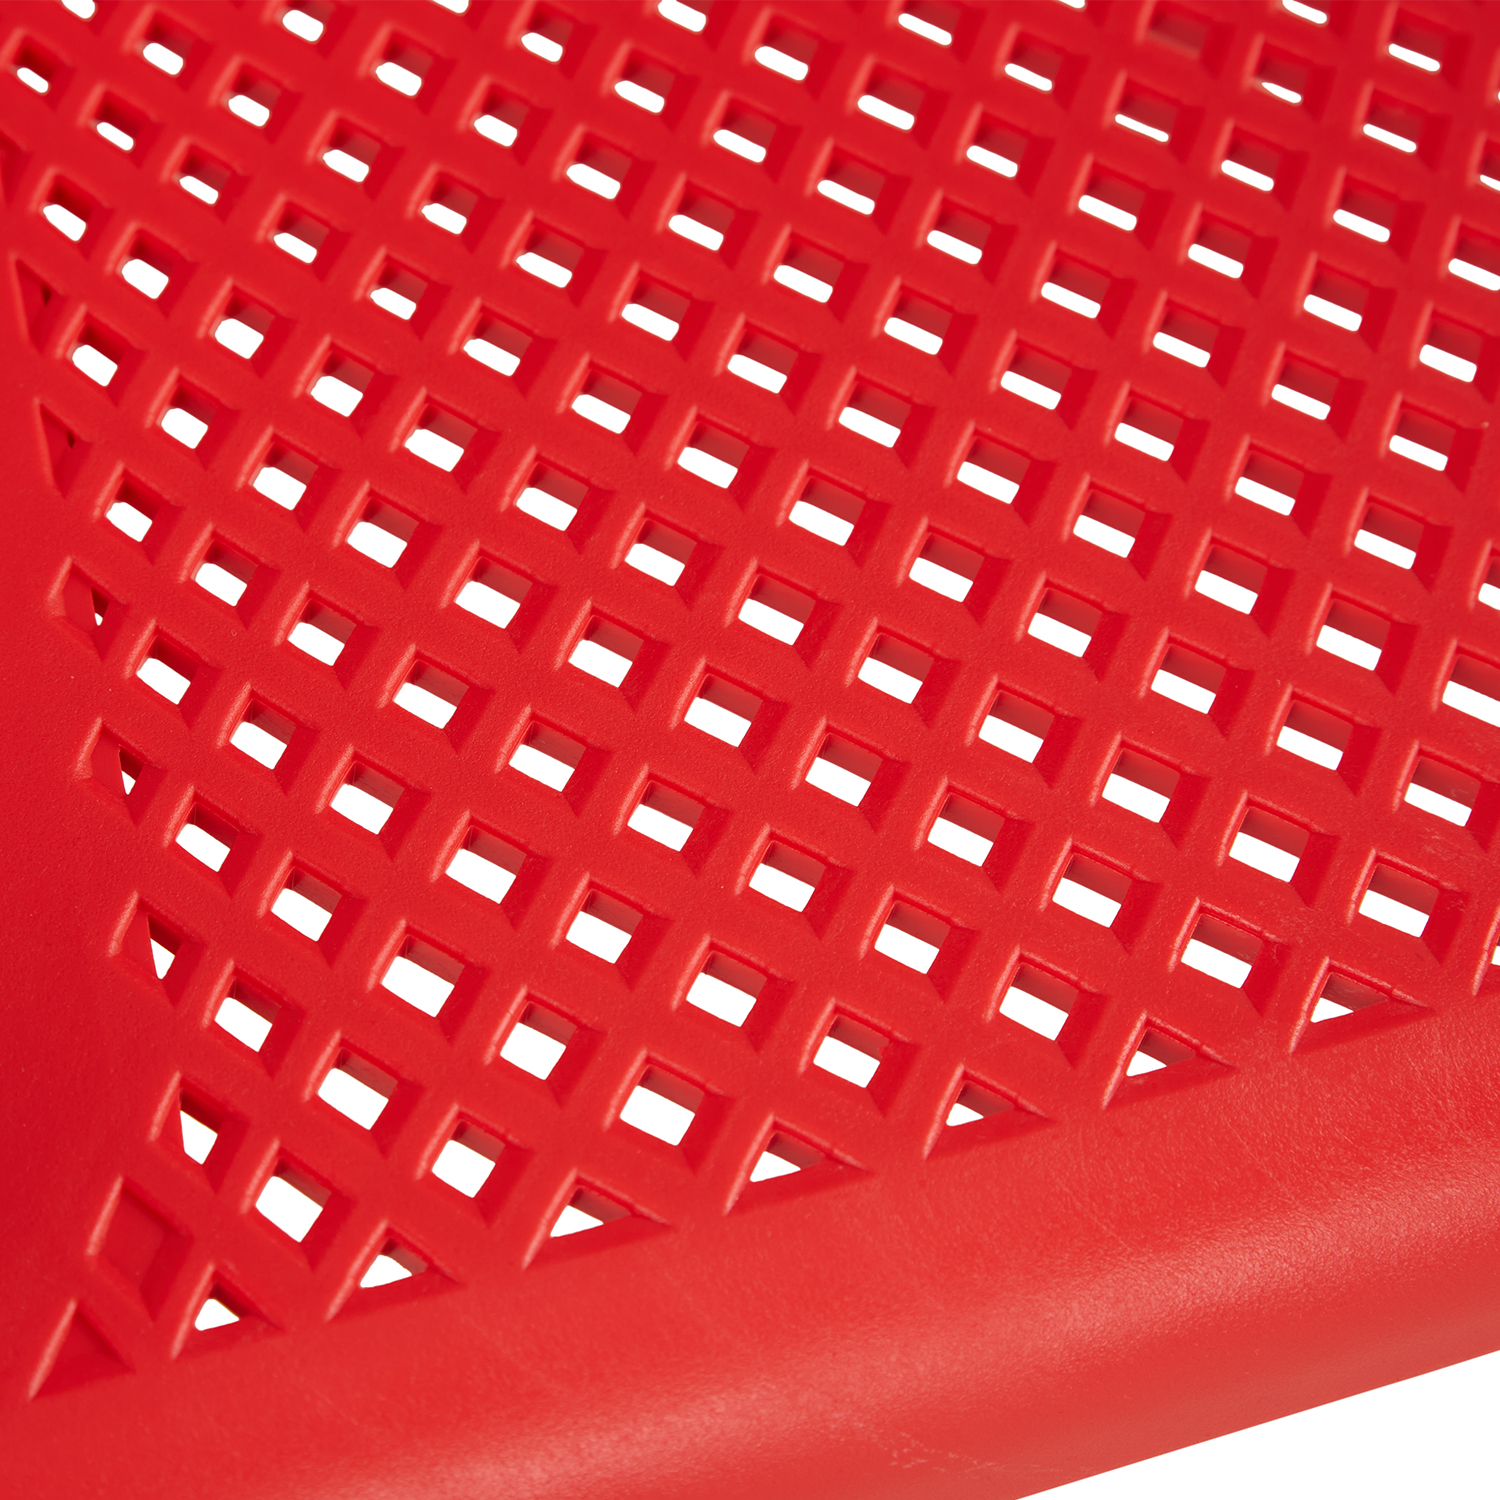 Chaise de jardin avec accoudoirs Rouge Lot de 6 Fauteuils de jardin Plastique Chaises exterieur Chaises empilable